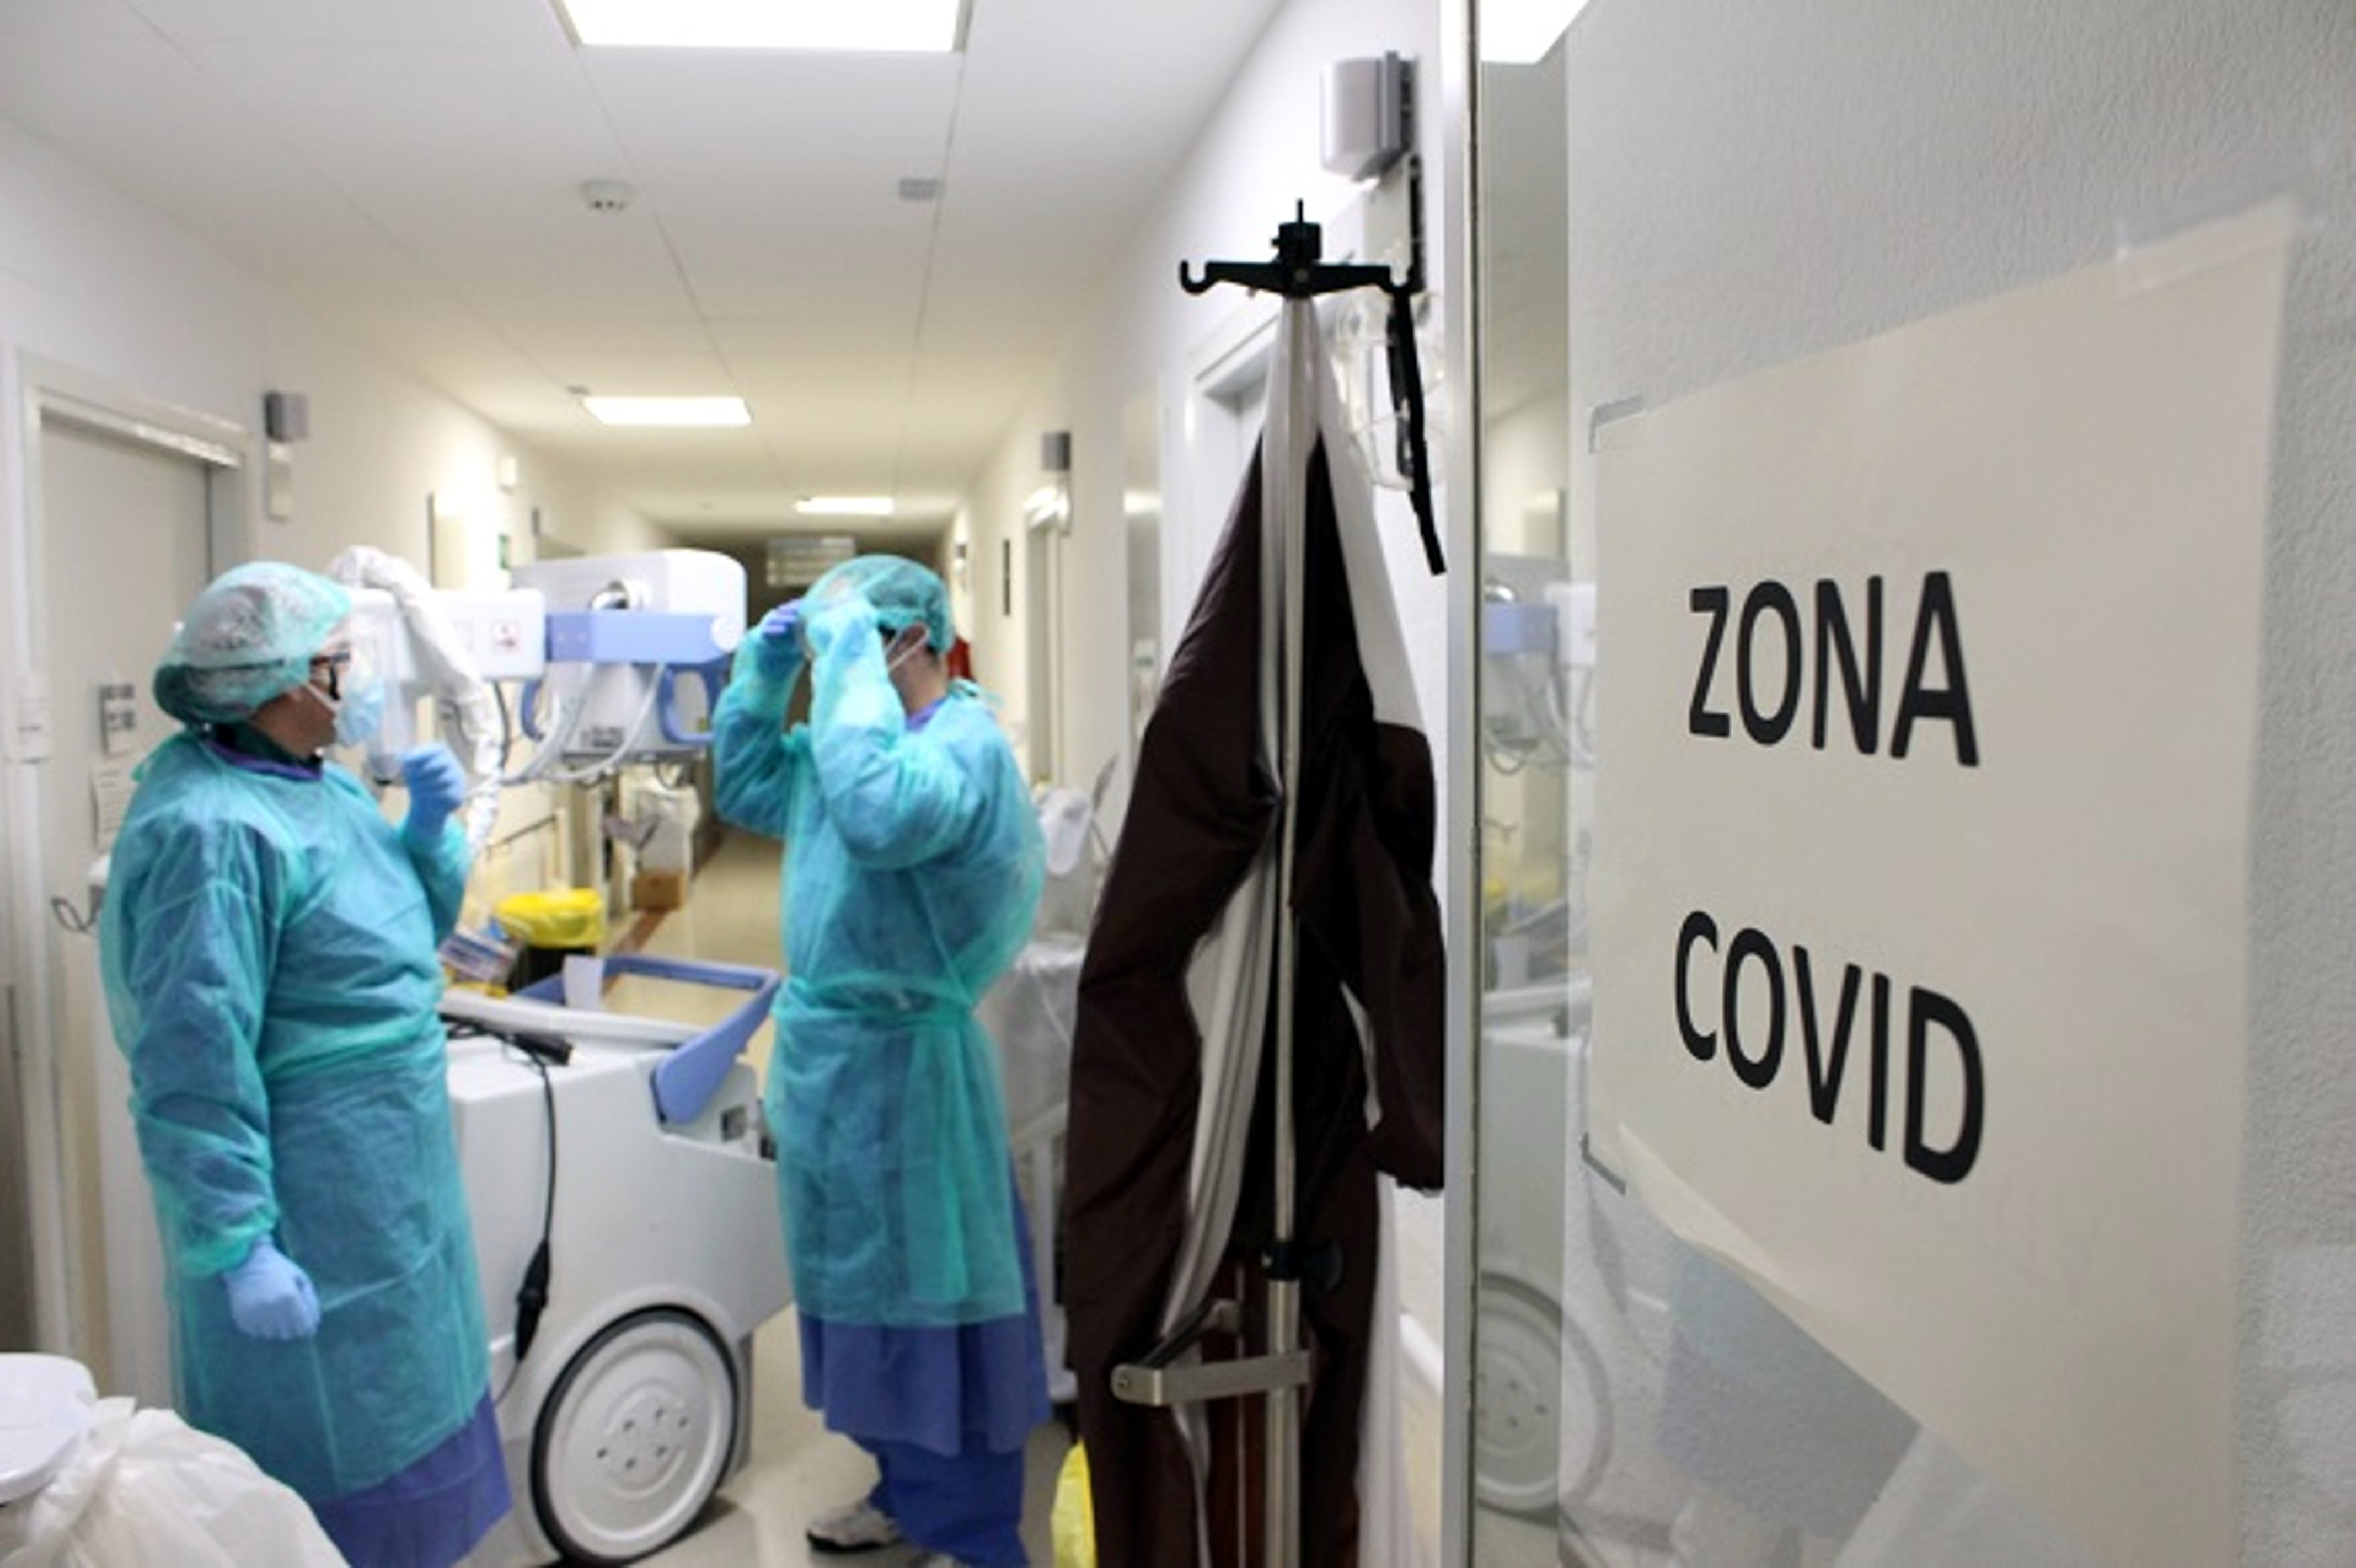 Continua baixant el nombre de morts per coronavirus a Espanya: 87